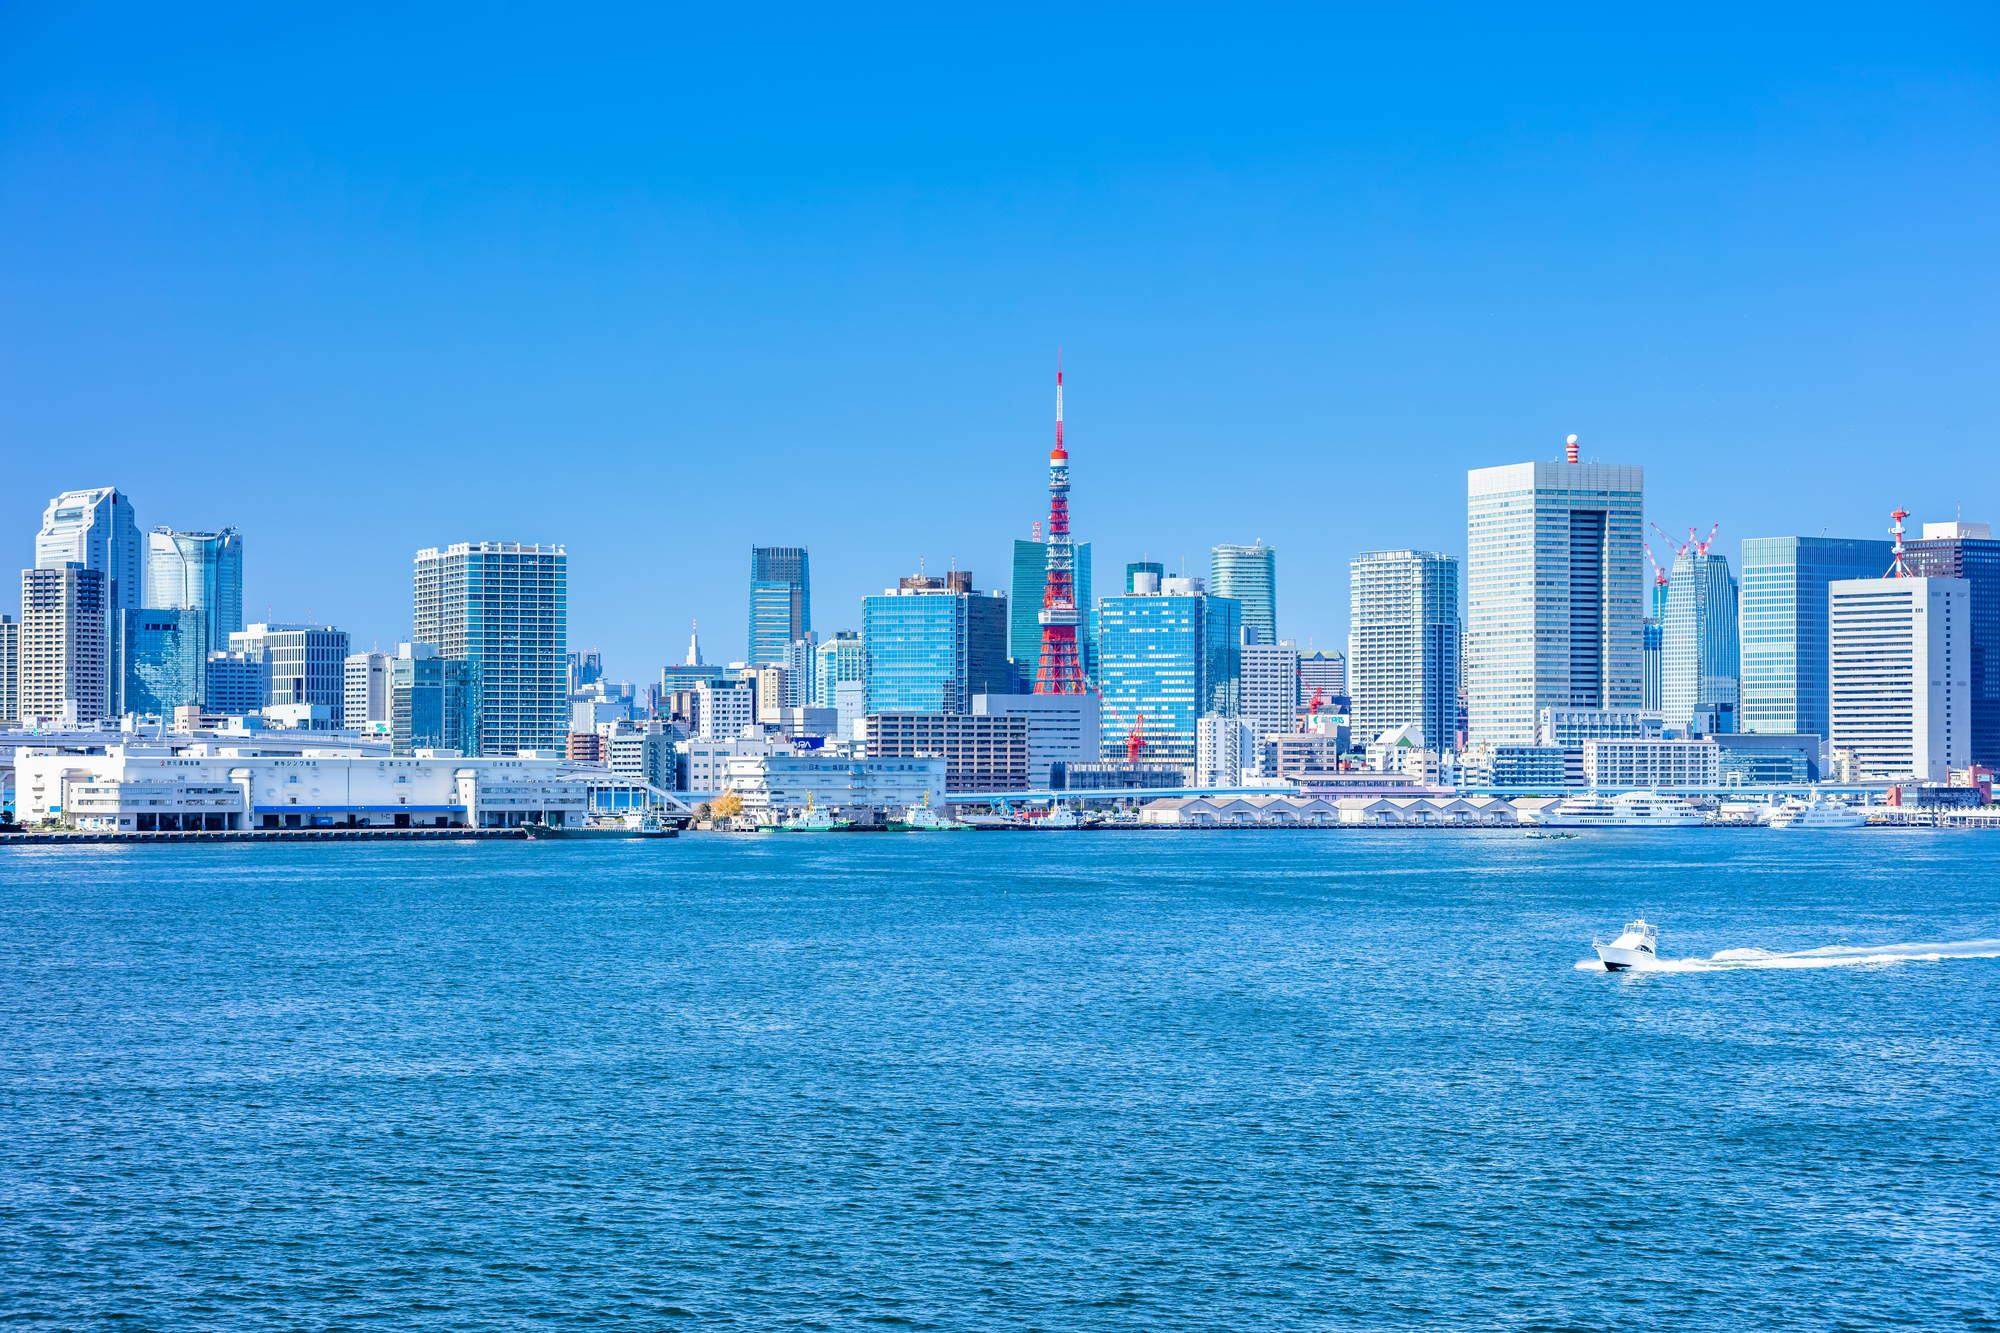 青空と東京タワー、海には船が進む様子